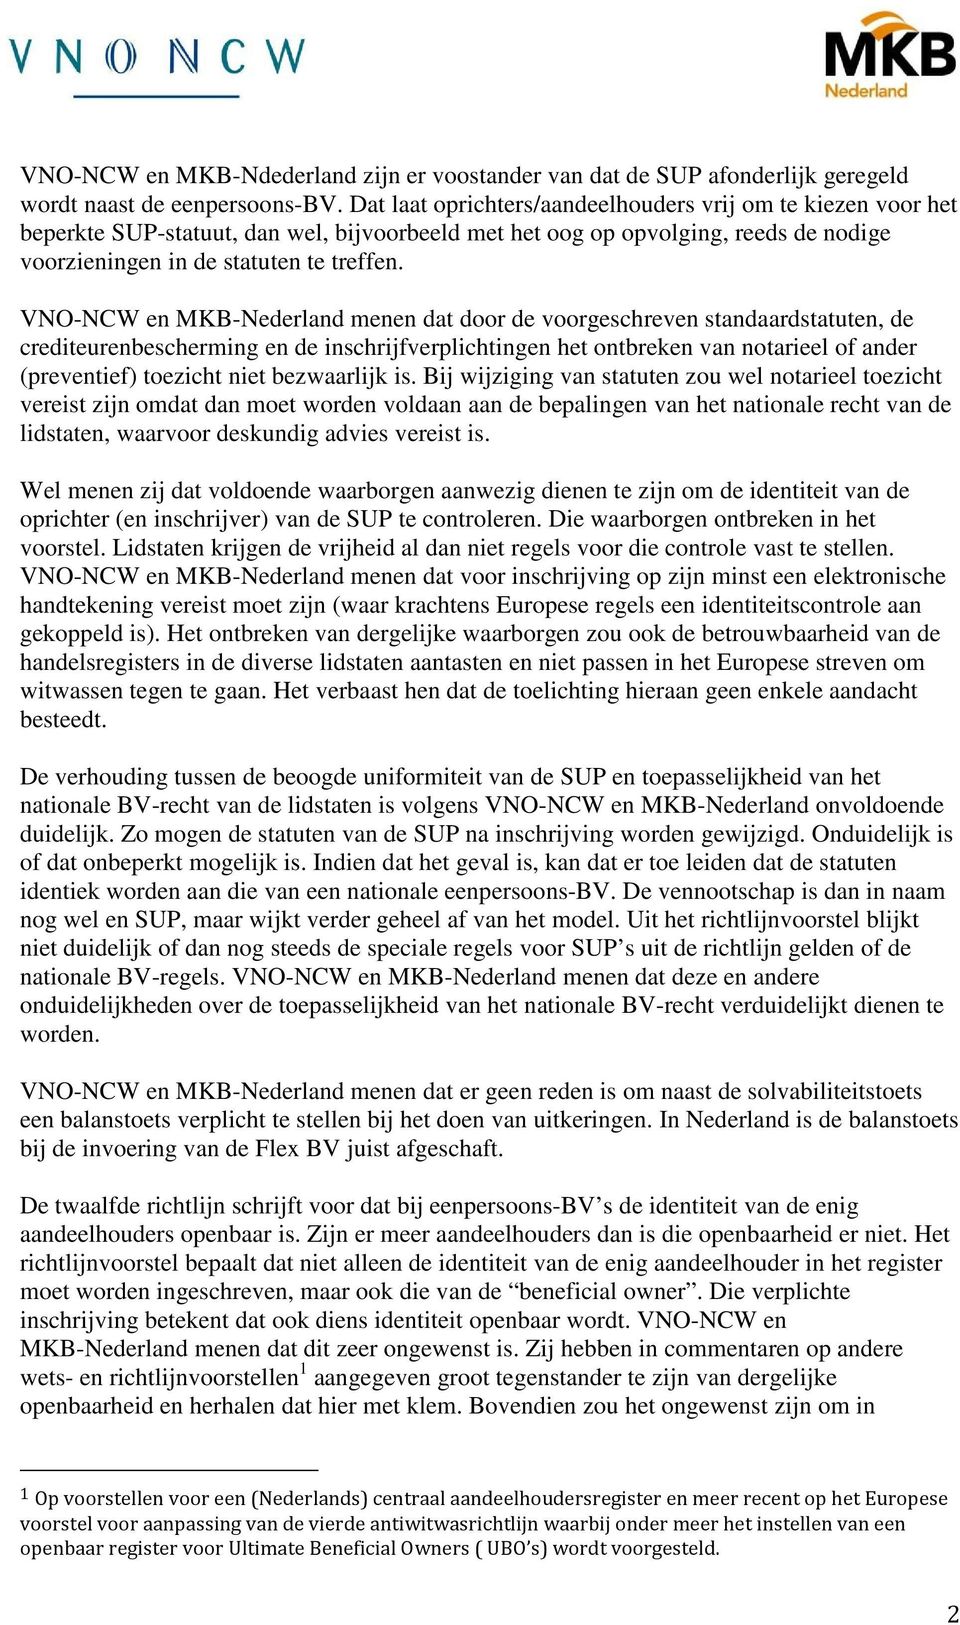 VNO-NCW en MKB-Nederland menen dat door de voorgeschreven standaardstatuten, de crediteurenbescherming en de inschrijfverplichtingen het ontbreken van notarieel of ander (preventief) toezicht niet